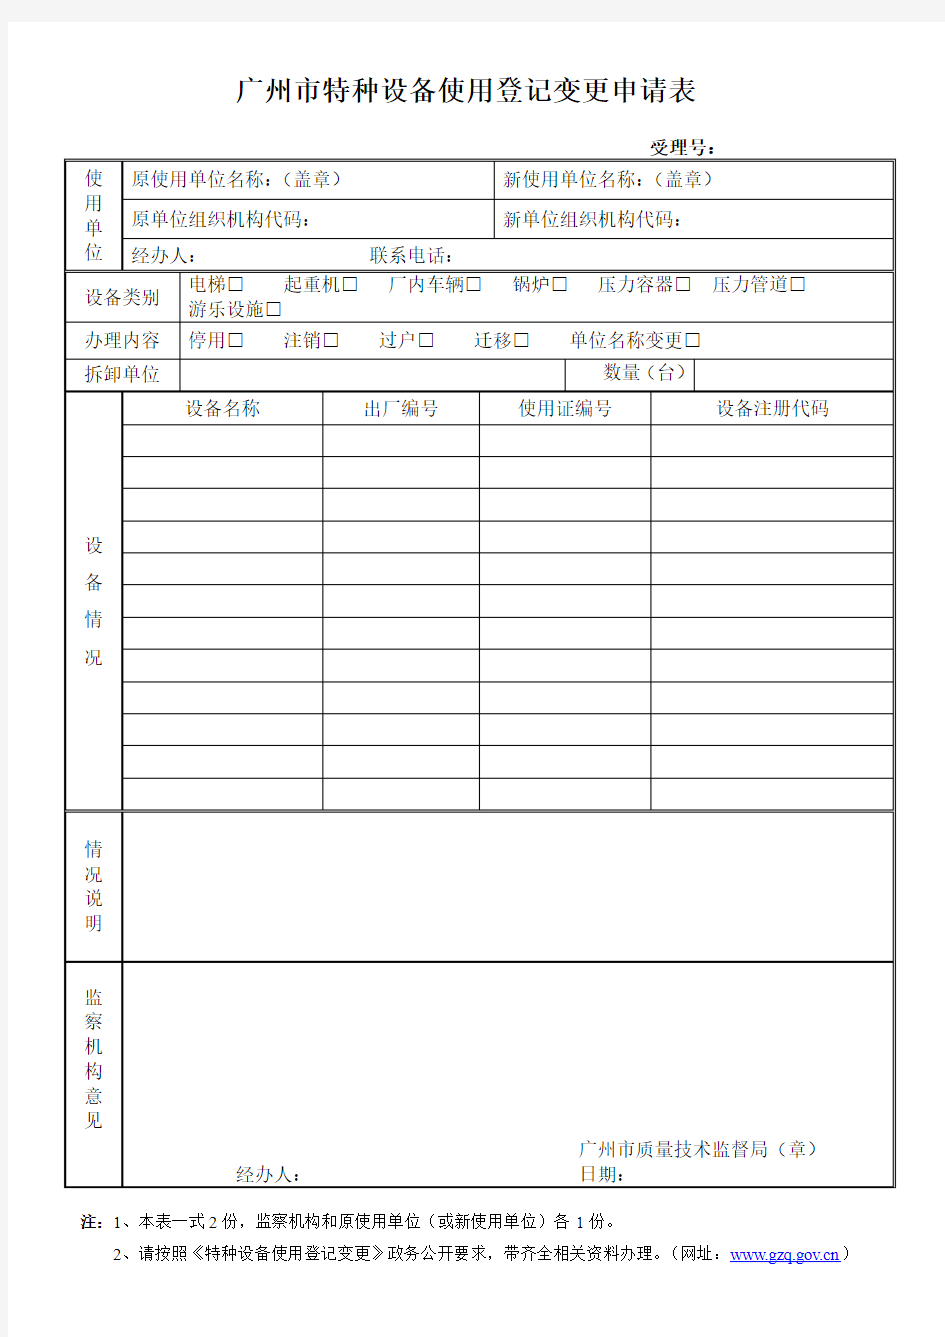 广州市特种设备使用登记变更申请表20090804165448